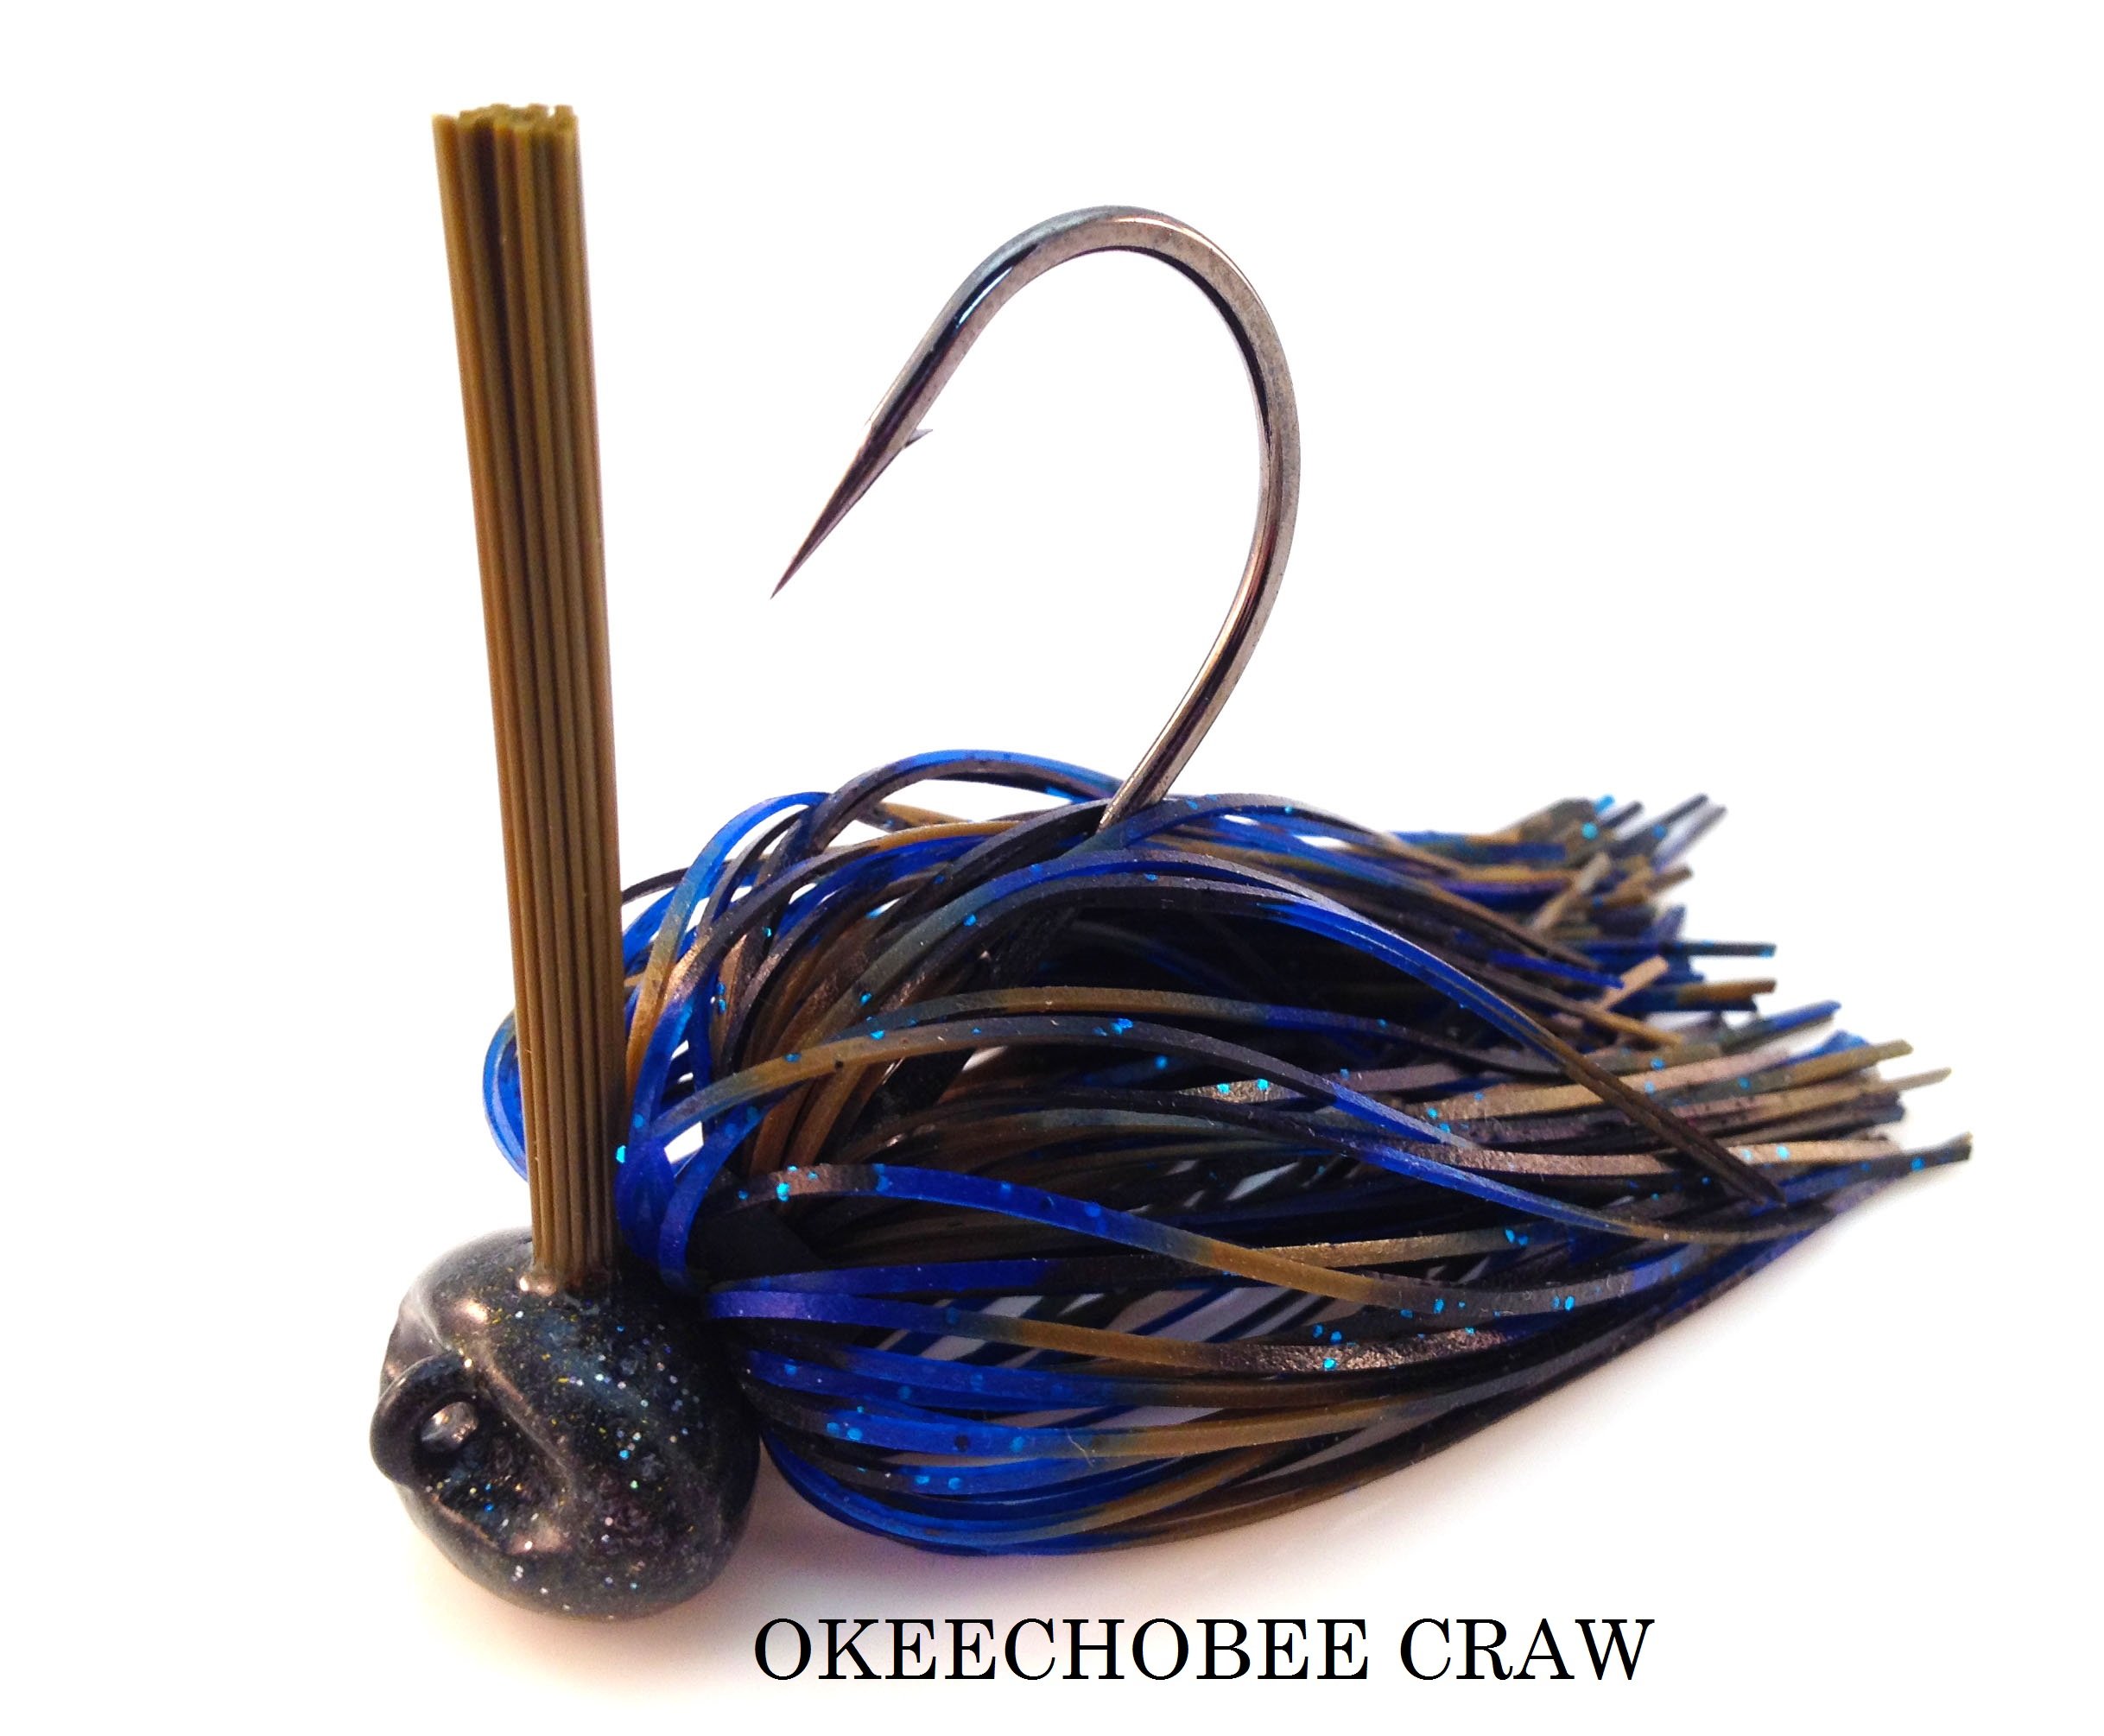 Okeechobee Craw.JPG